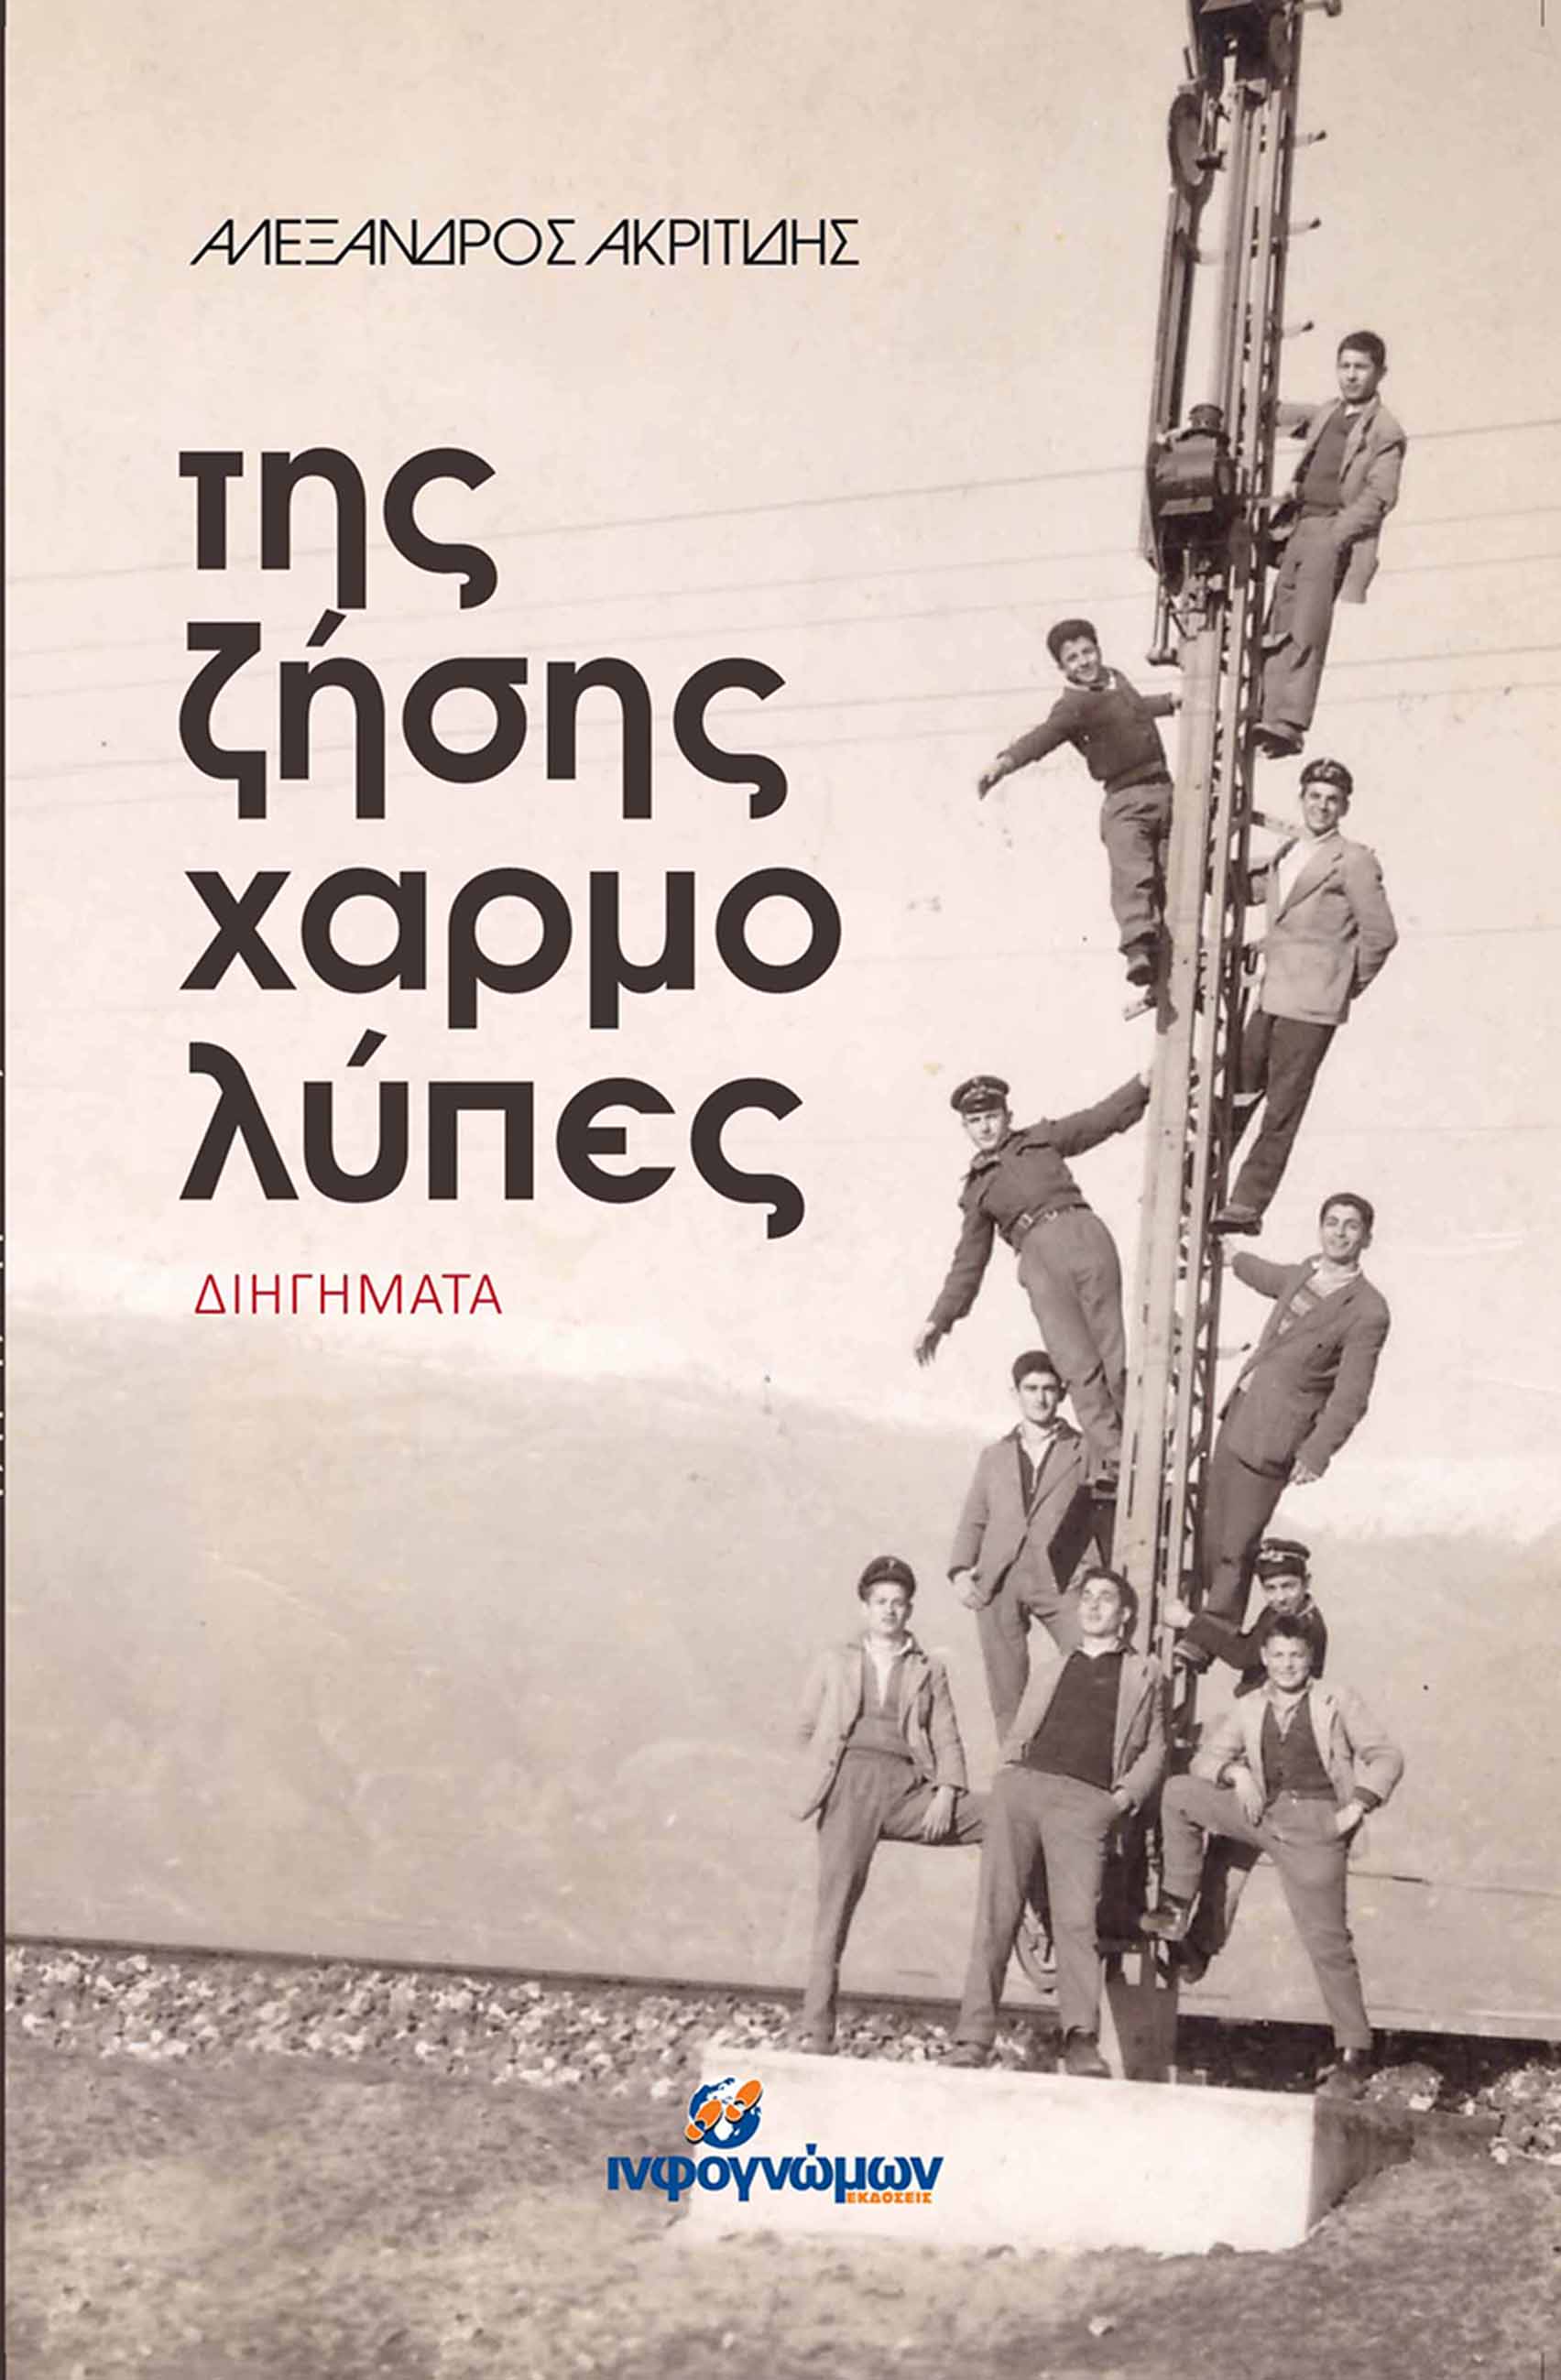 Παρουσίαση του βιβλίου του Αλέξανδρου Ακριτίδη, «Της ζήσης χαρμολύπες», στον Εύοσμο Θεσσαλονίκης